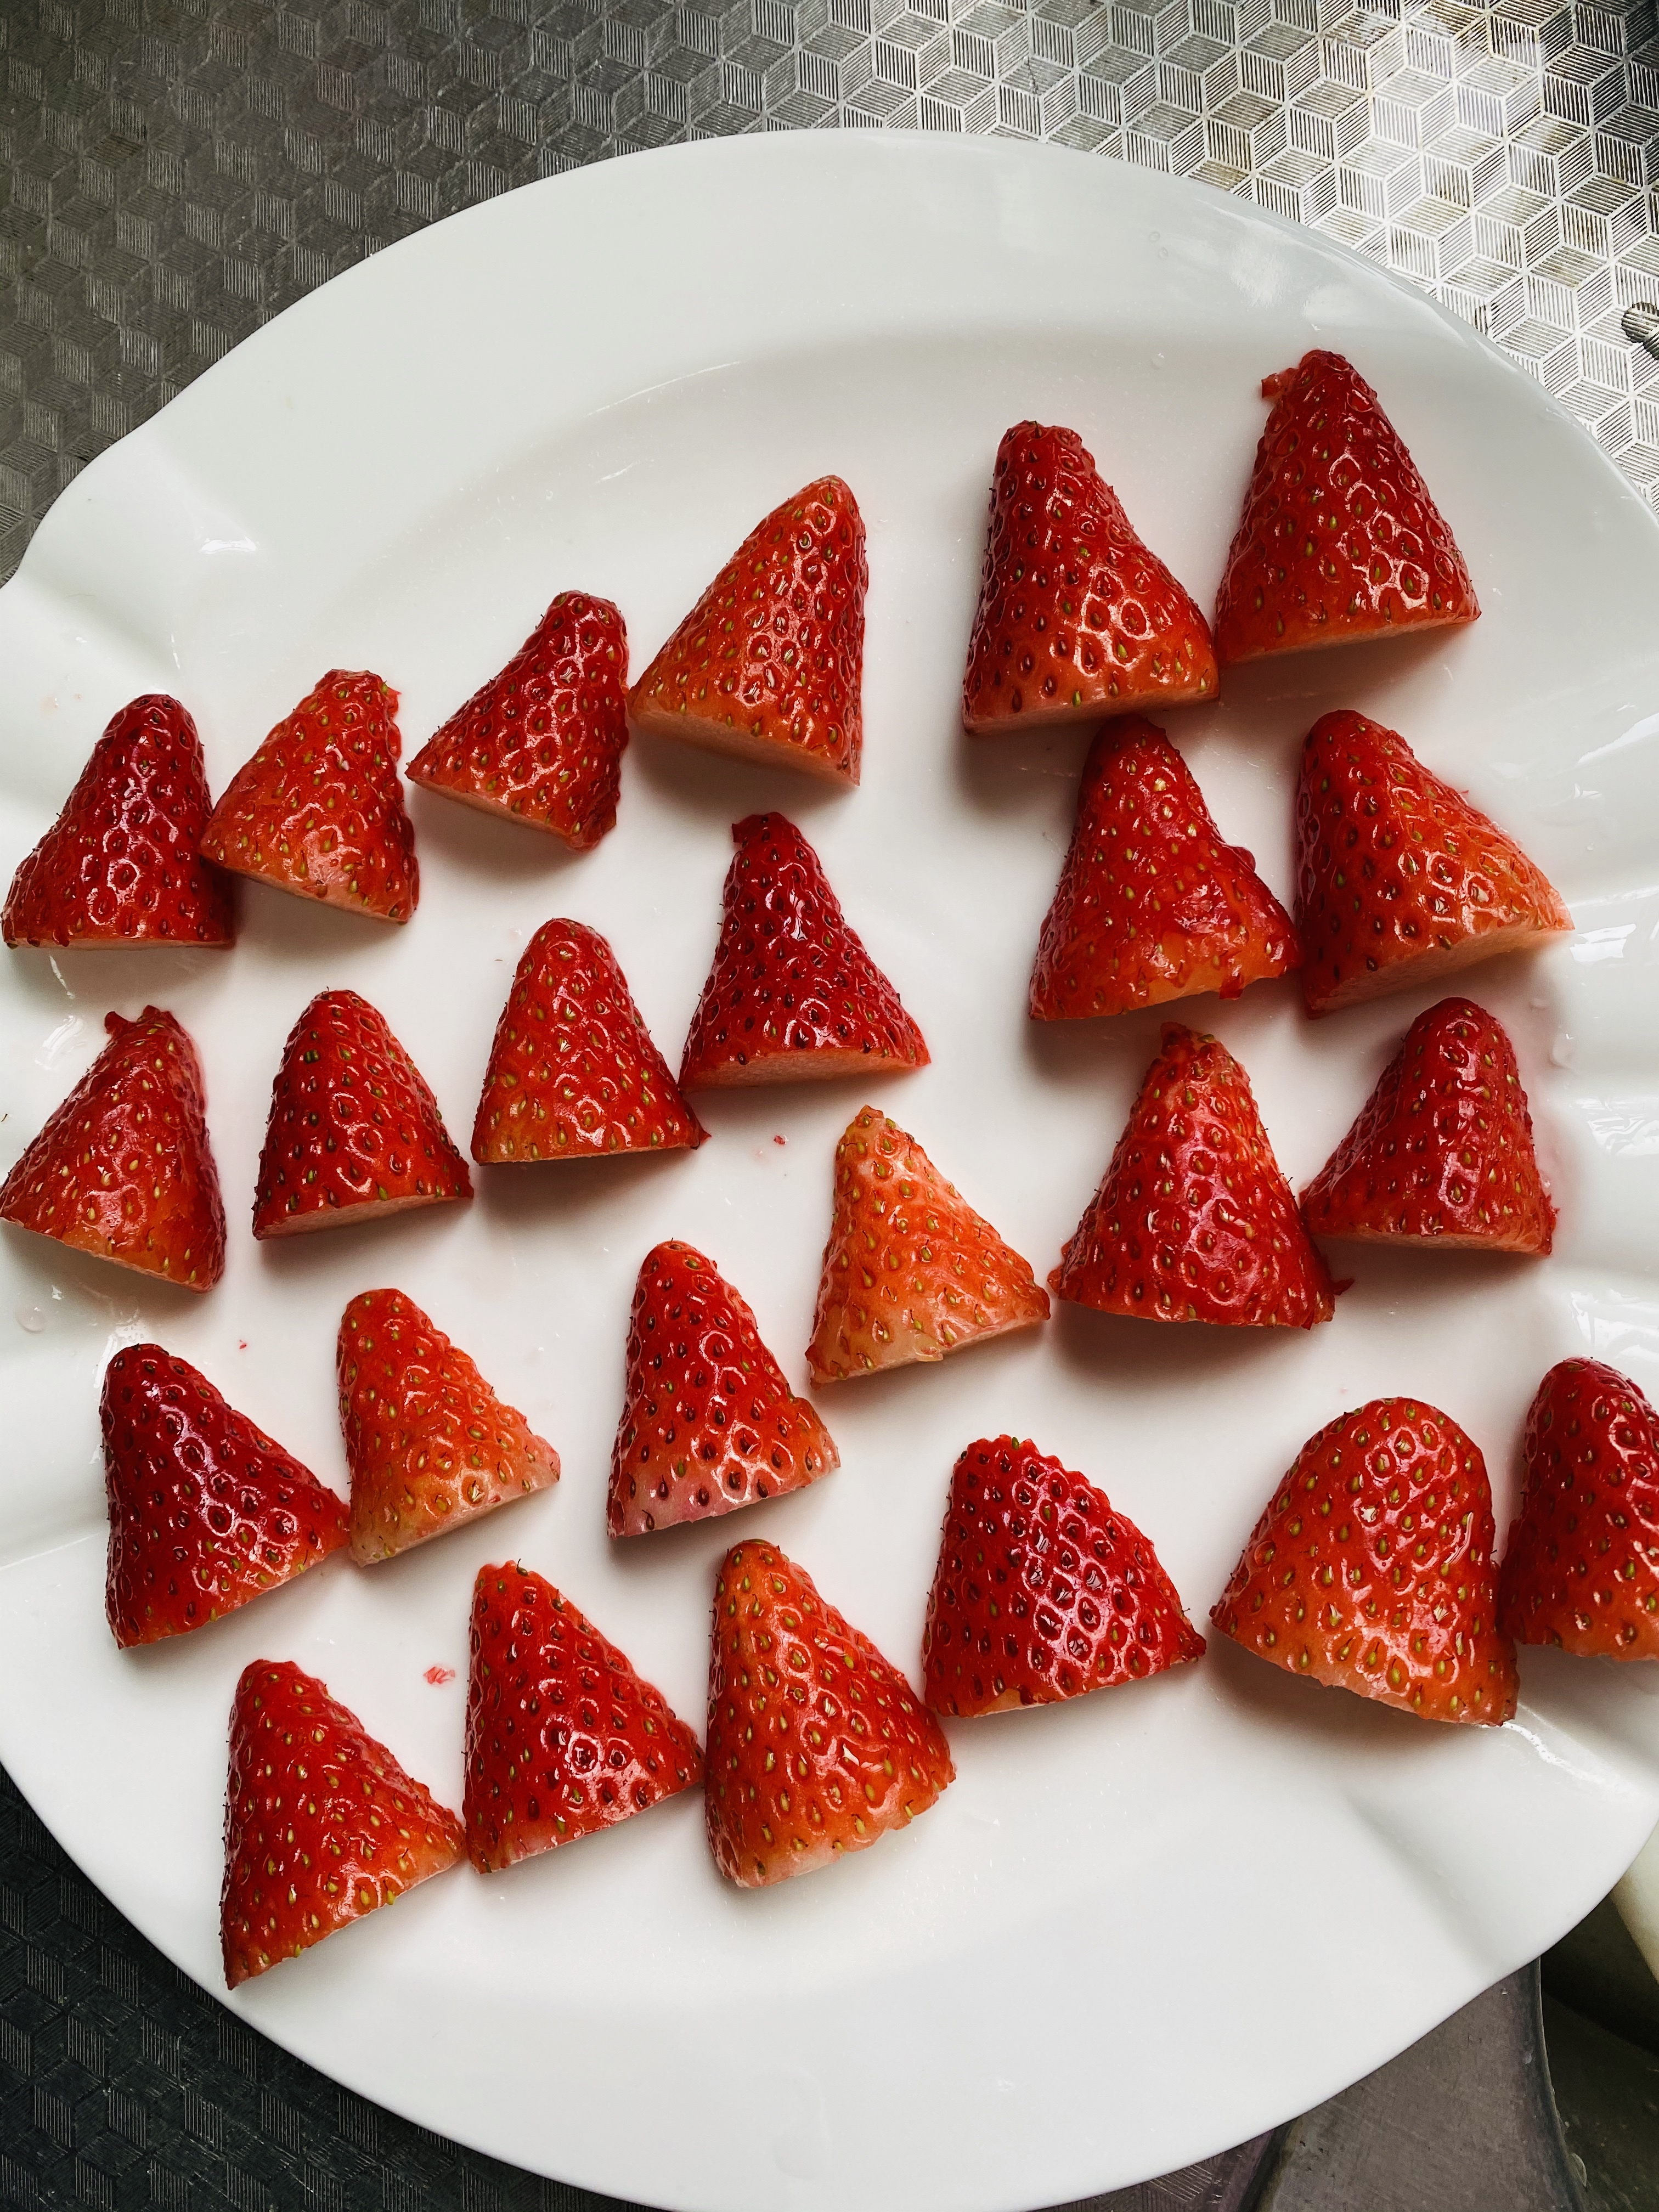 冬天的第一颗草莓🍓圣诞款🎄草莓大泡芙✨妥妥哒颜值美味 😋快来艾特你的大猪蹄子吧🙈的做法 步骤28